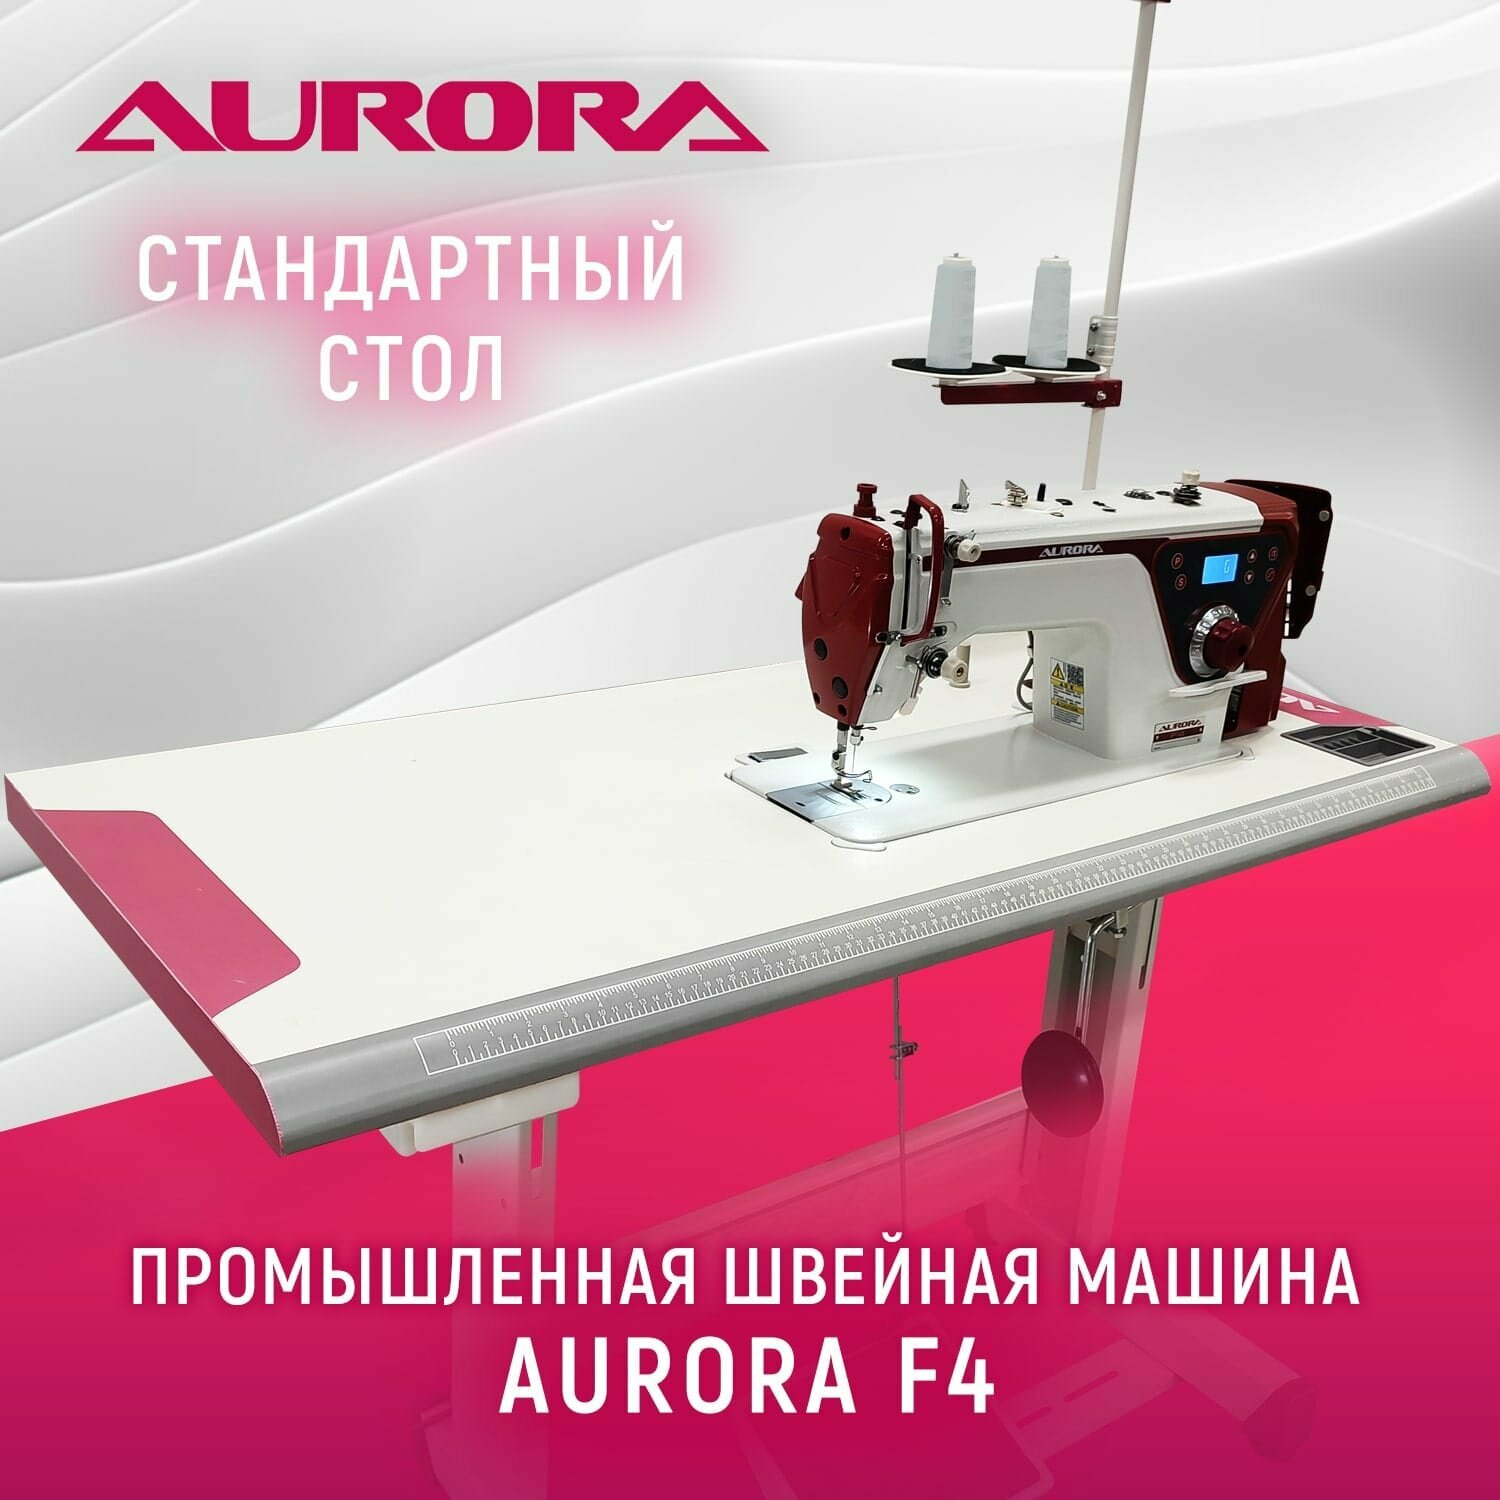 Промышленная прямострочная швейная машина Aurora F4 с позиционером иглы cо стандартным столом Aurora